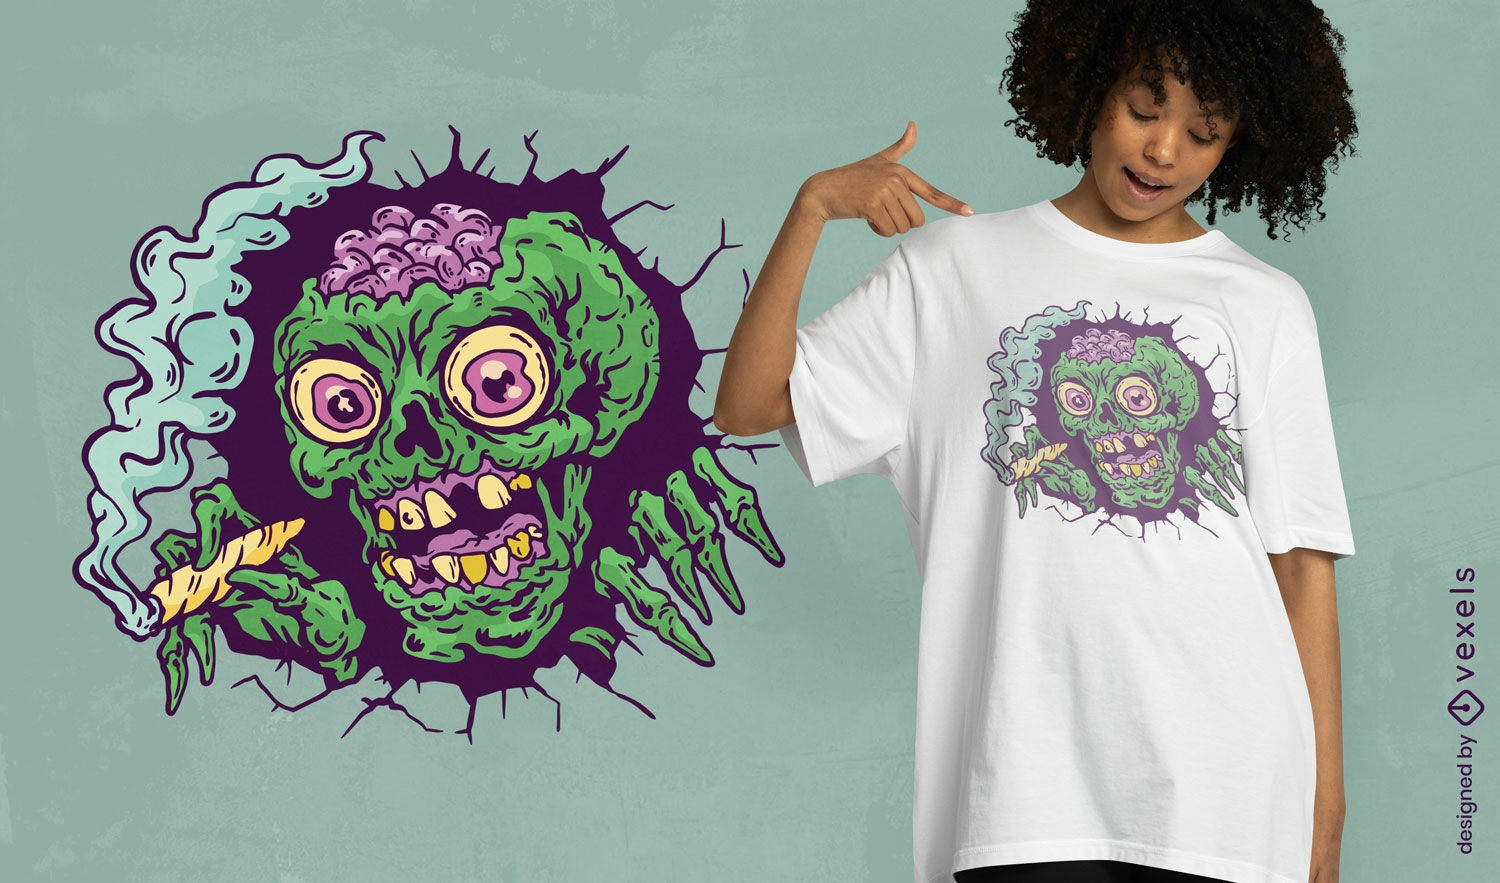 Dise?o de camiseta fusionando cabeza de zombie.